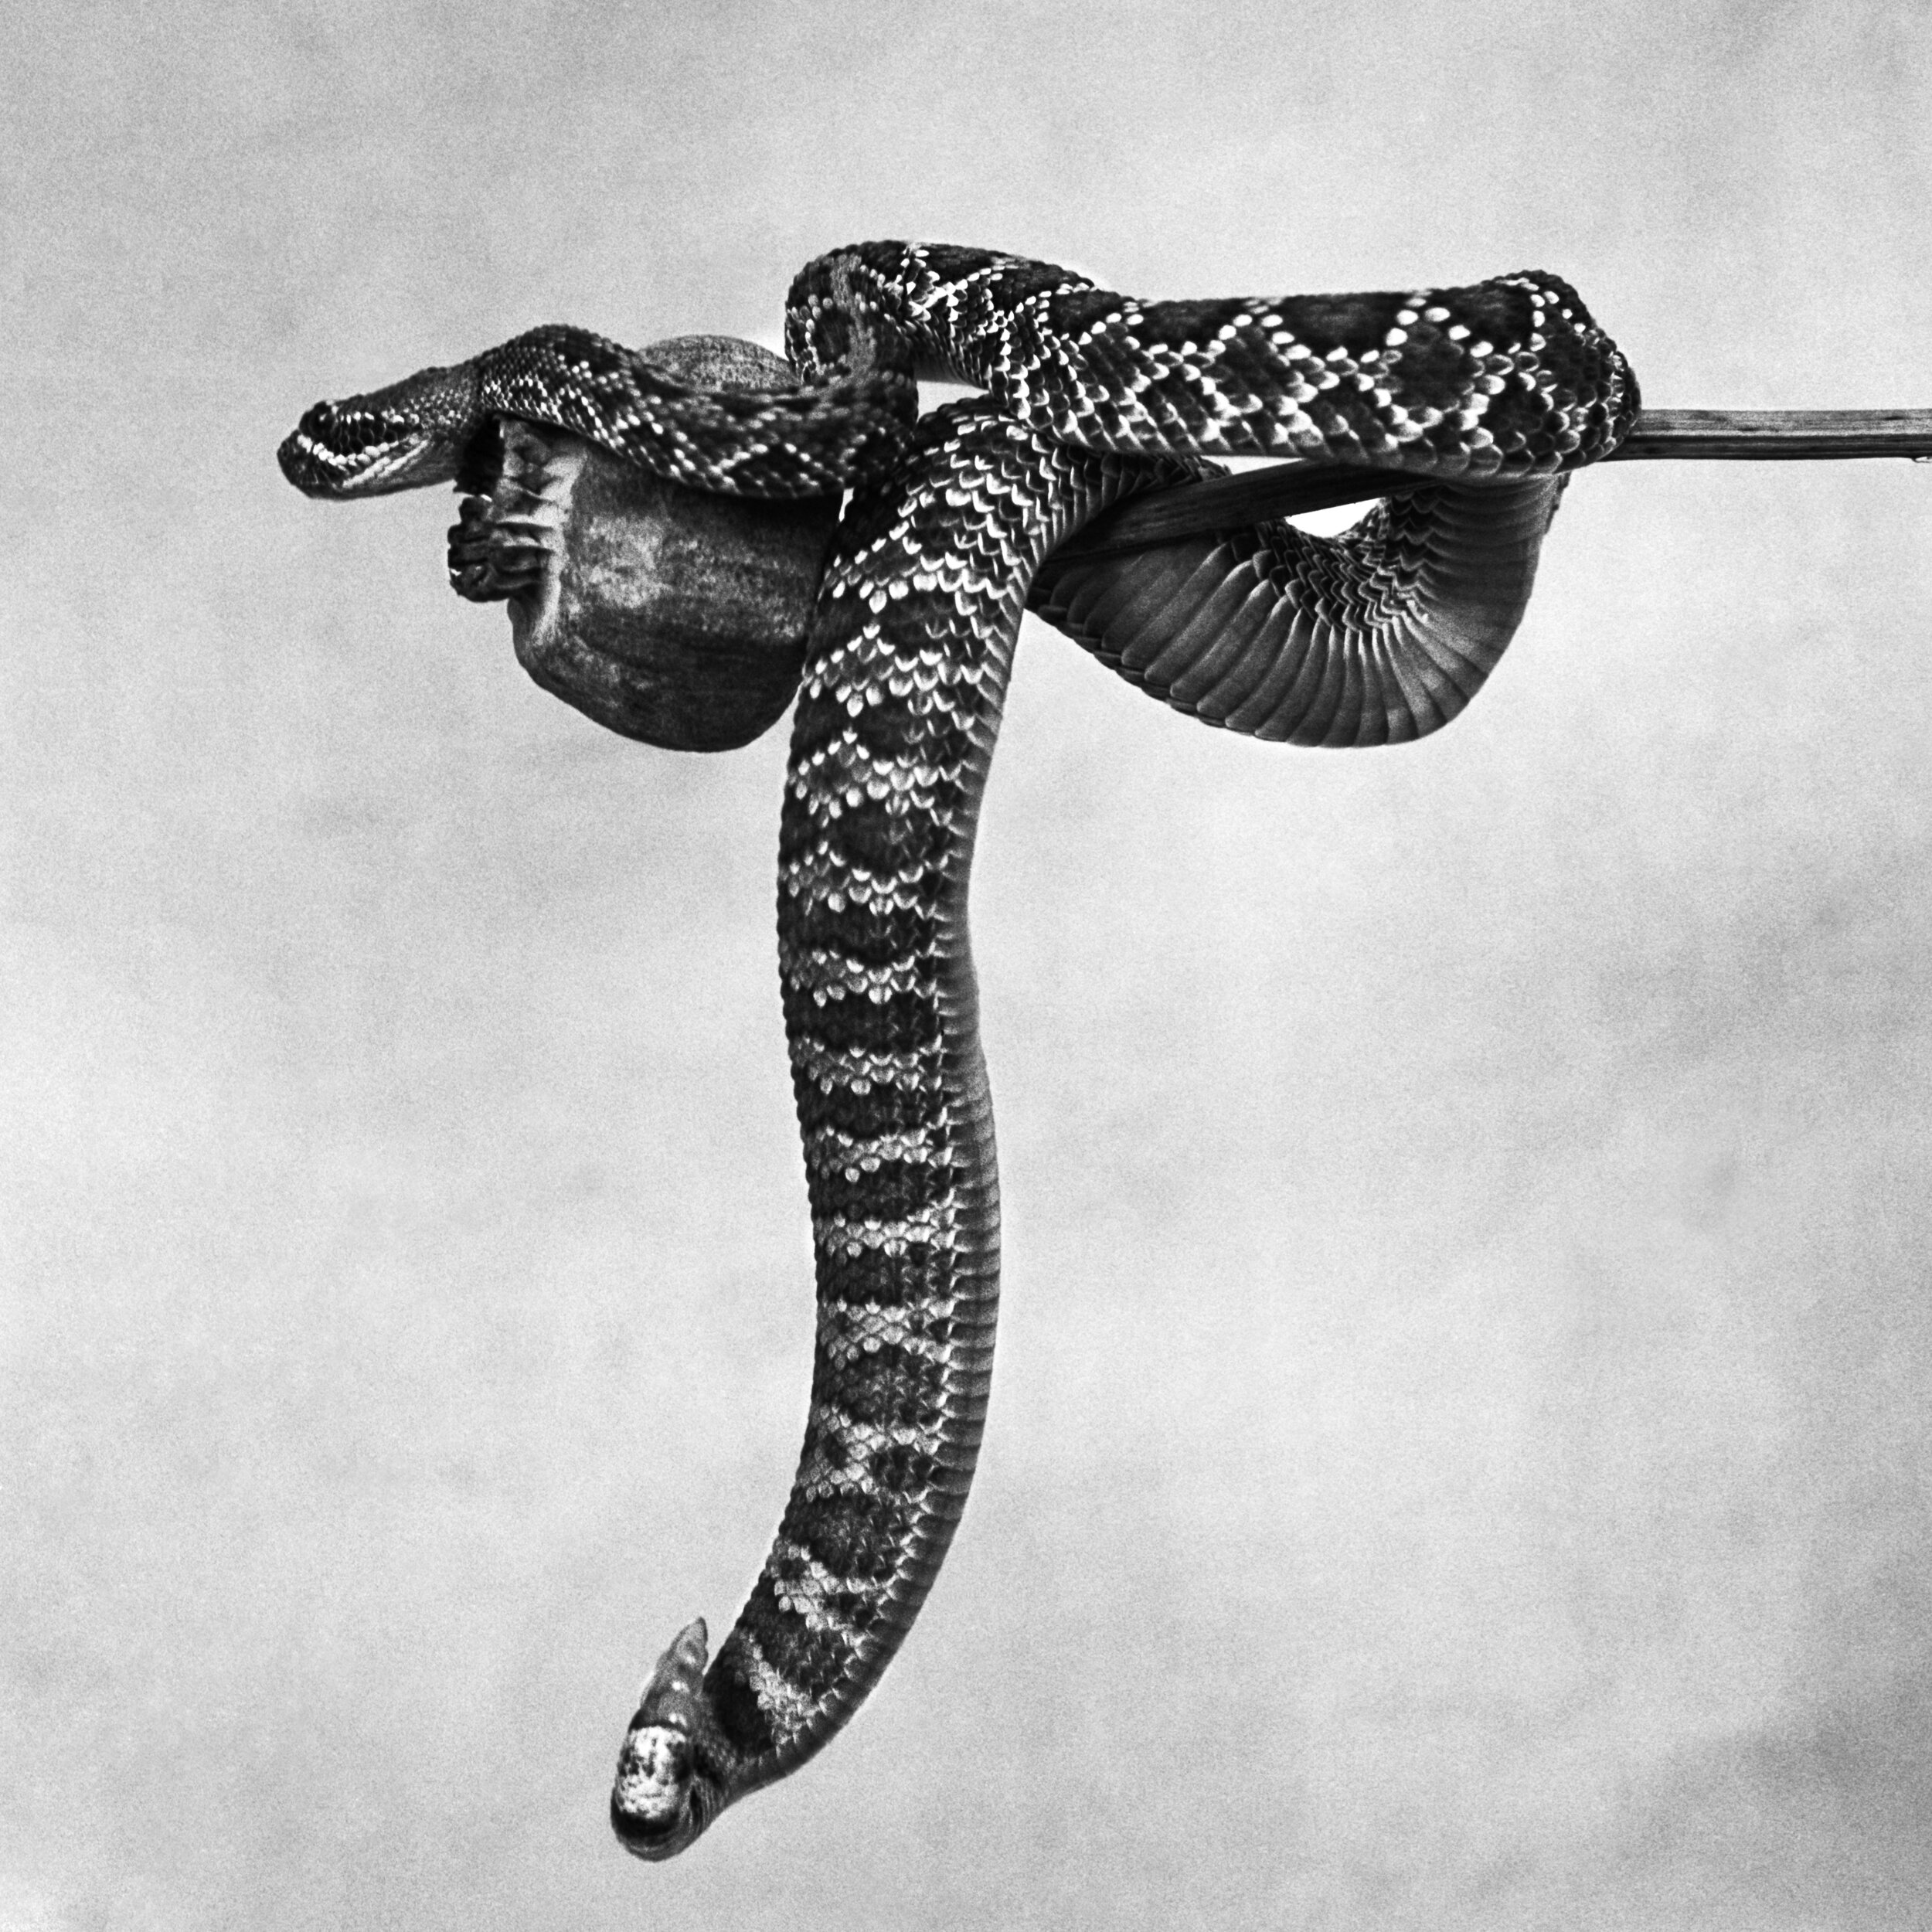 Mohave Rattle Snake Gelatin Silver.jpg